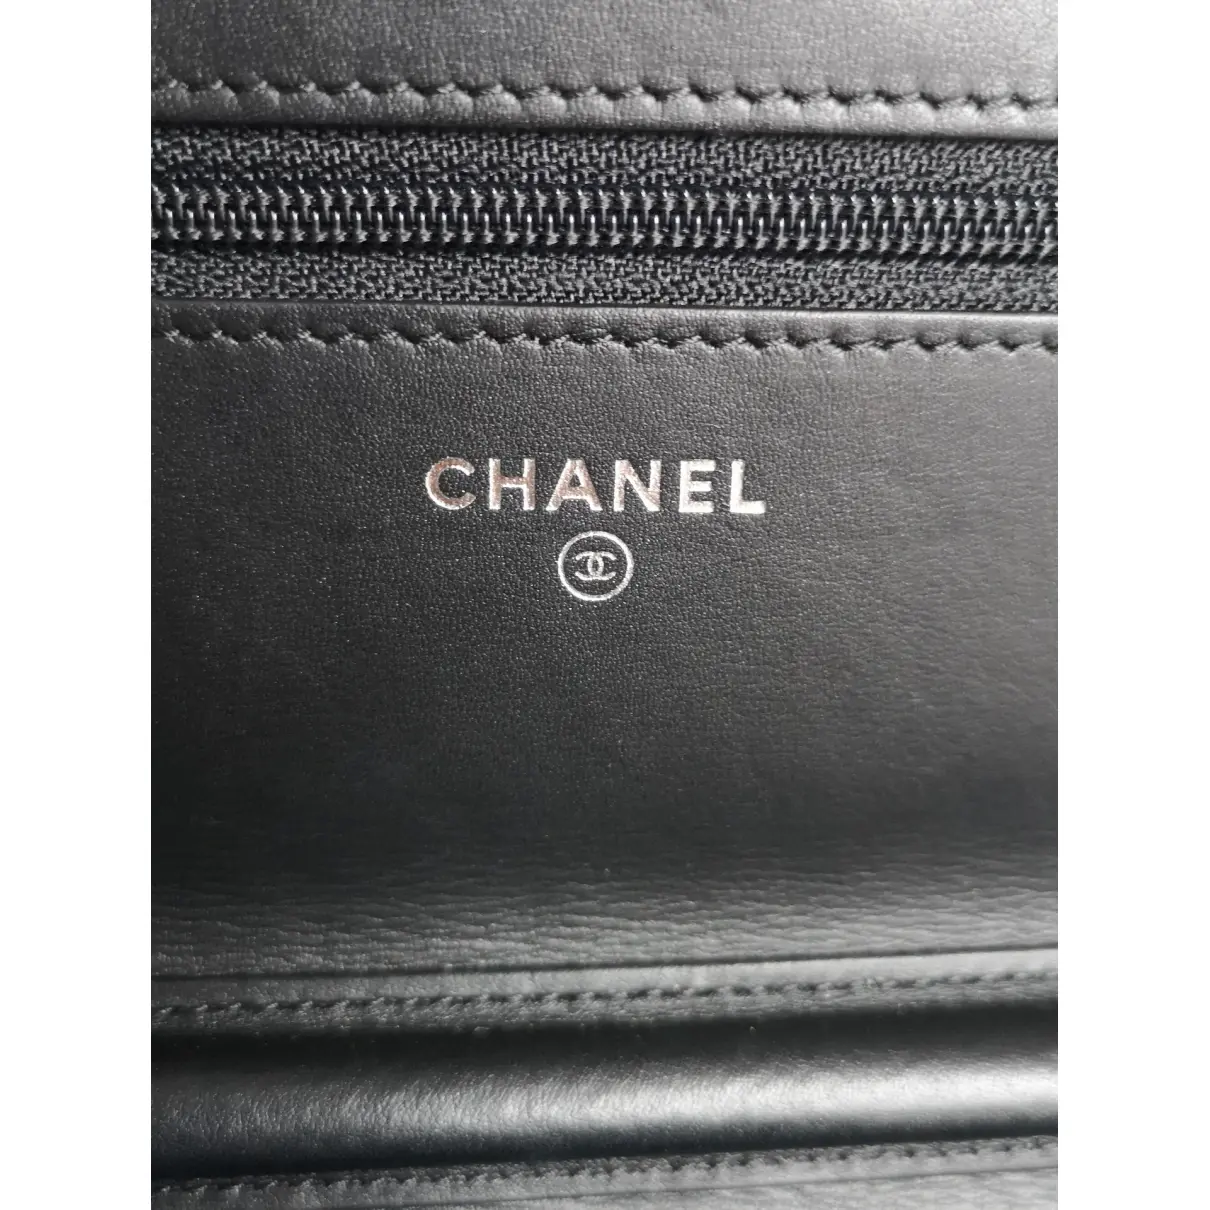 Wallet On Chain Boy Half Flap python crossbody bag Chanel